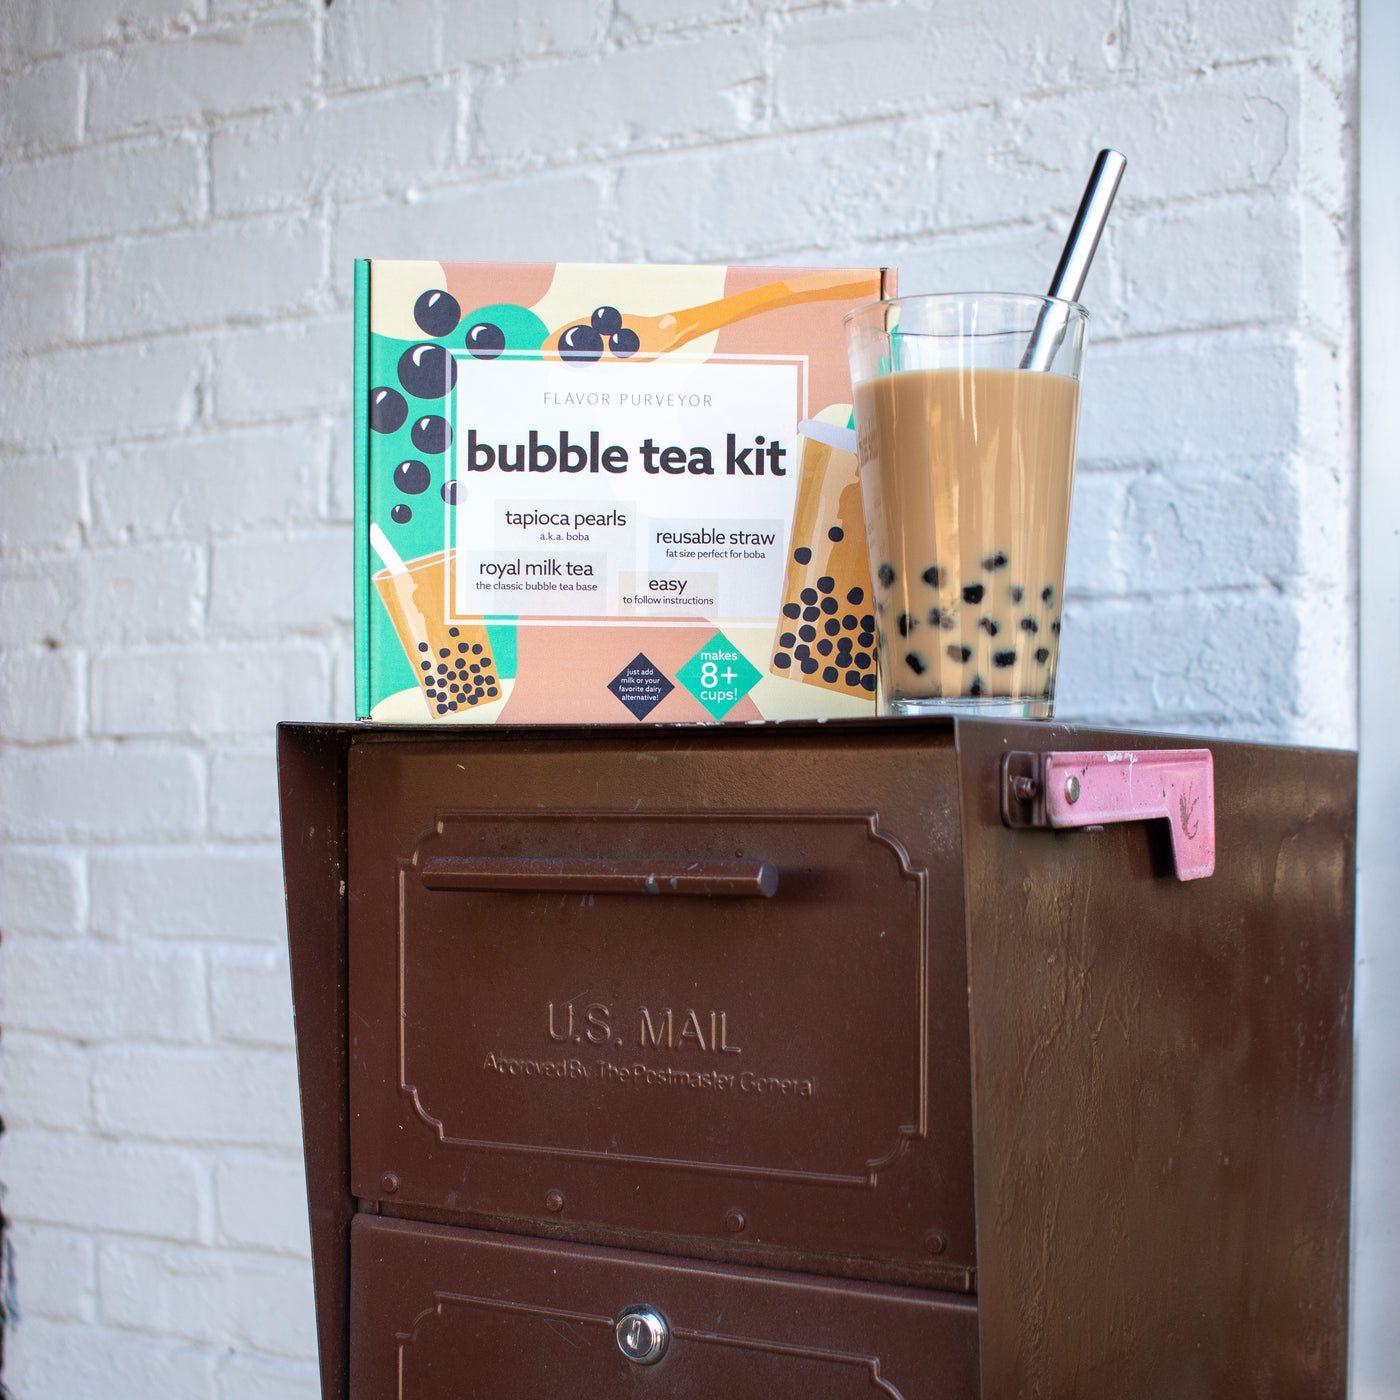 Bubble Tea Kit - Flavor Purveyor